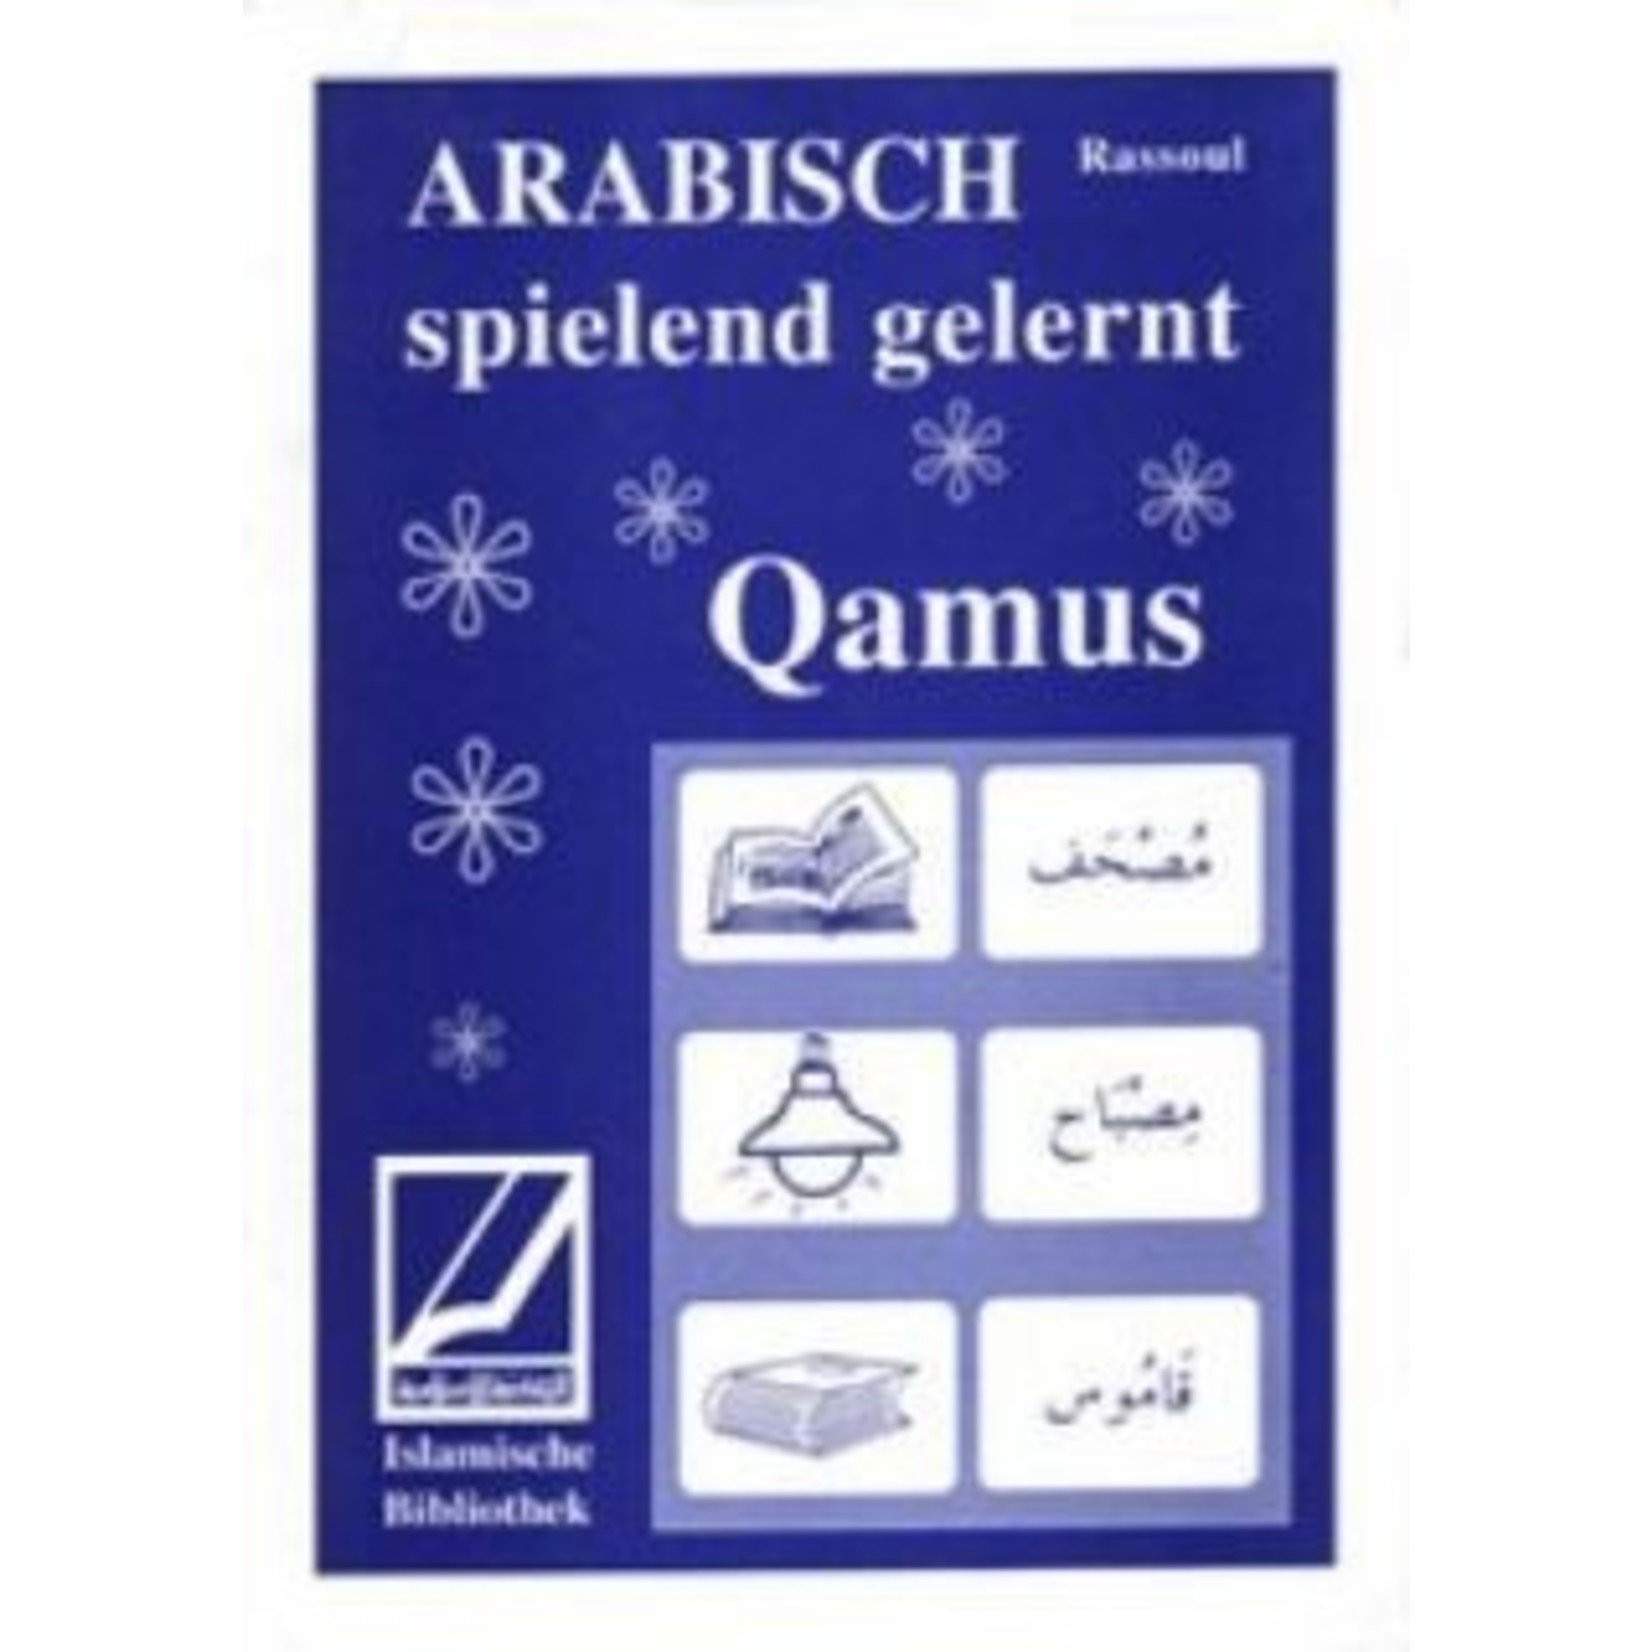 Qamus-Arabisch spielend gelernt